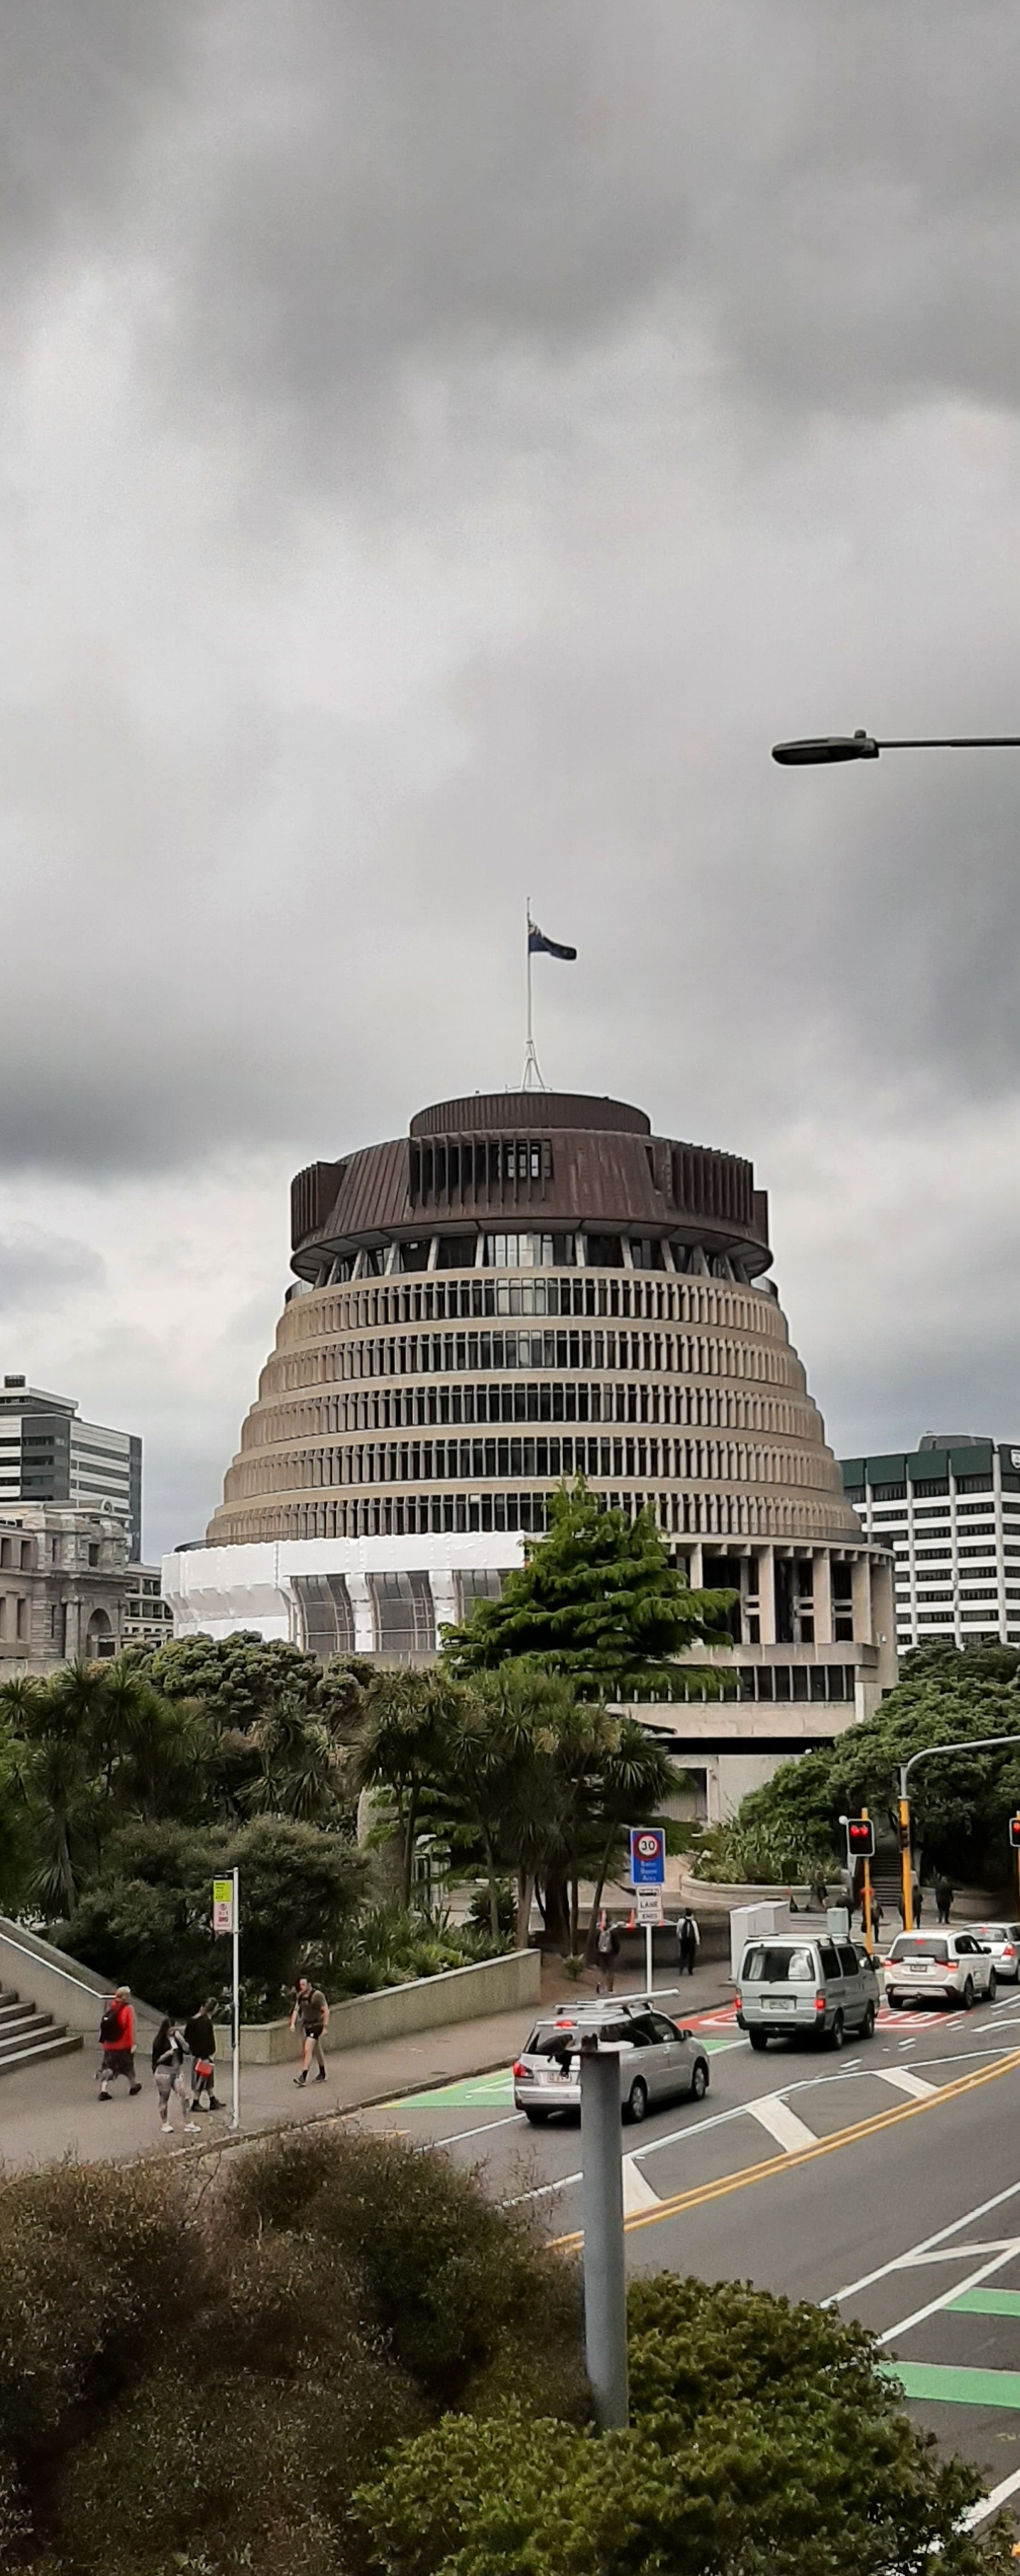 Uuden-Seelannin hallituksen päämaja, jota nimitetään mehiläispesäksi sen ulkonäön vuoksi.